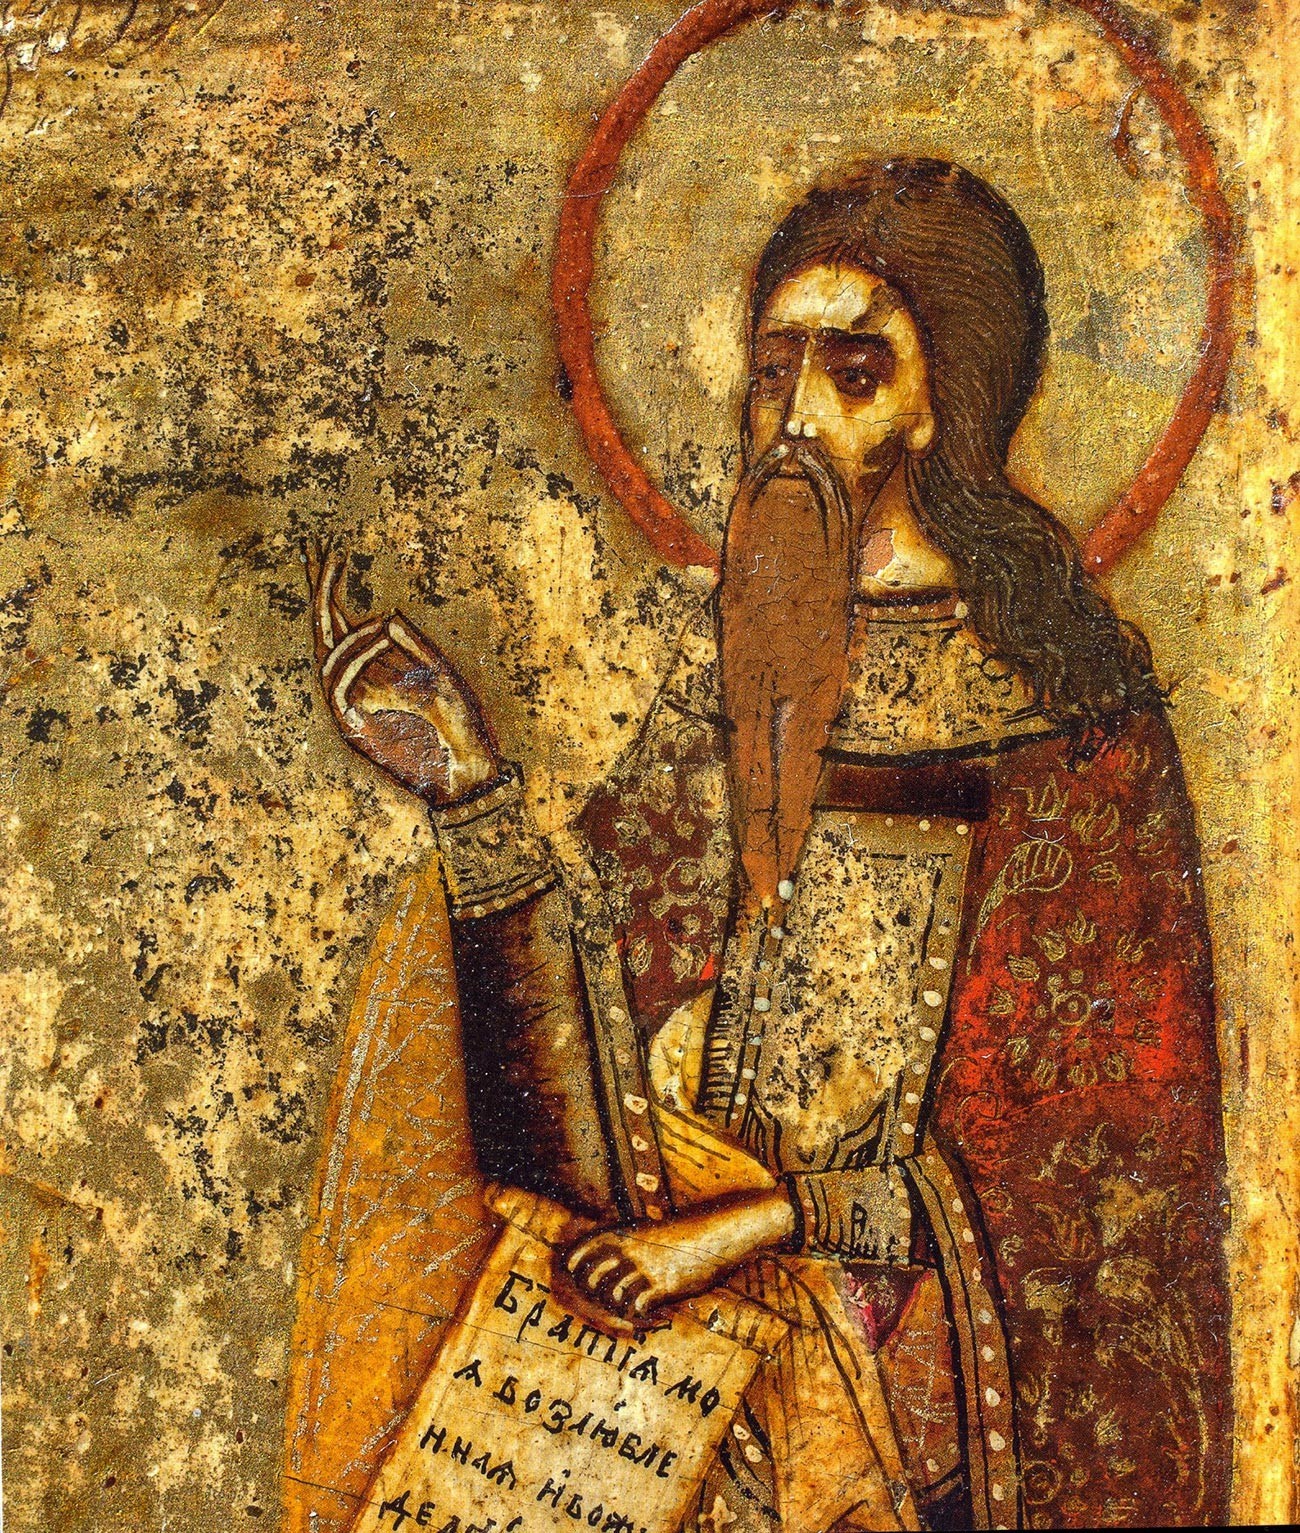 Avvakum Petrov pada ikon penganut Kepercayaan Lama abad ke-17.